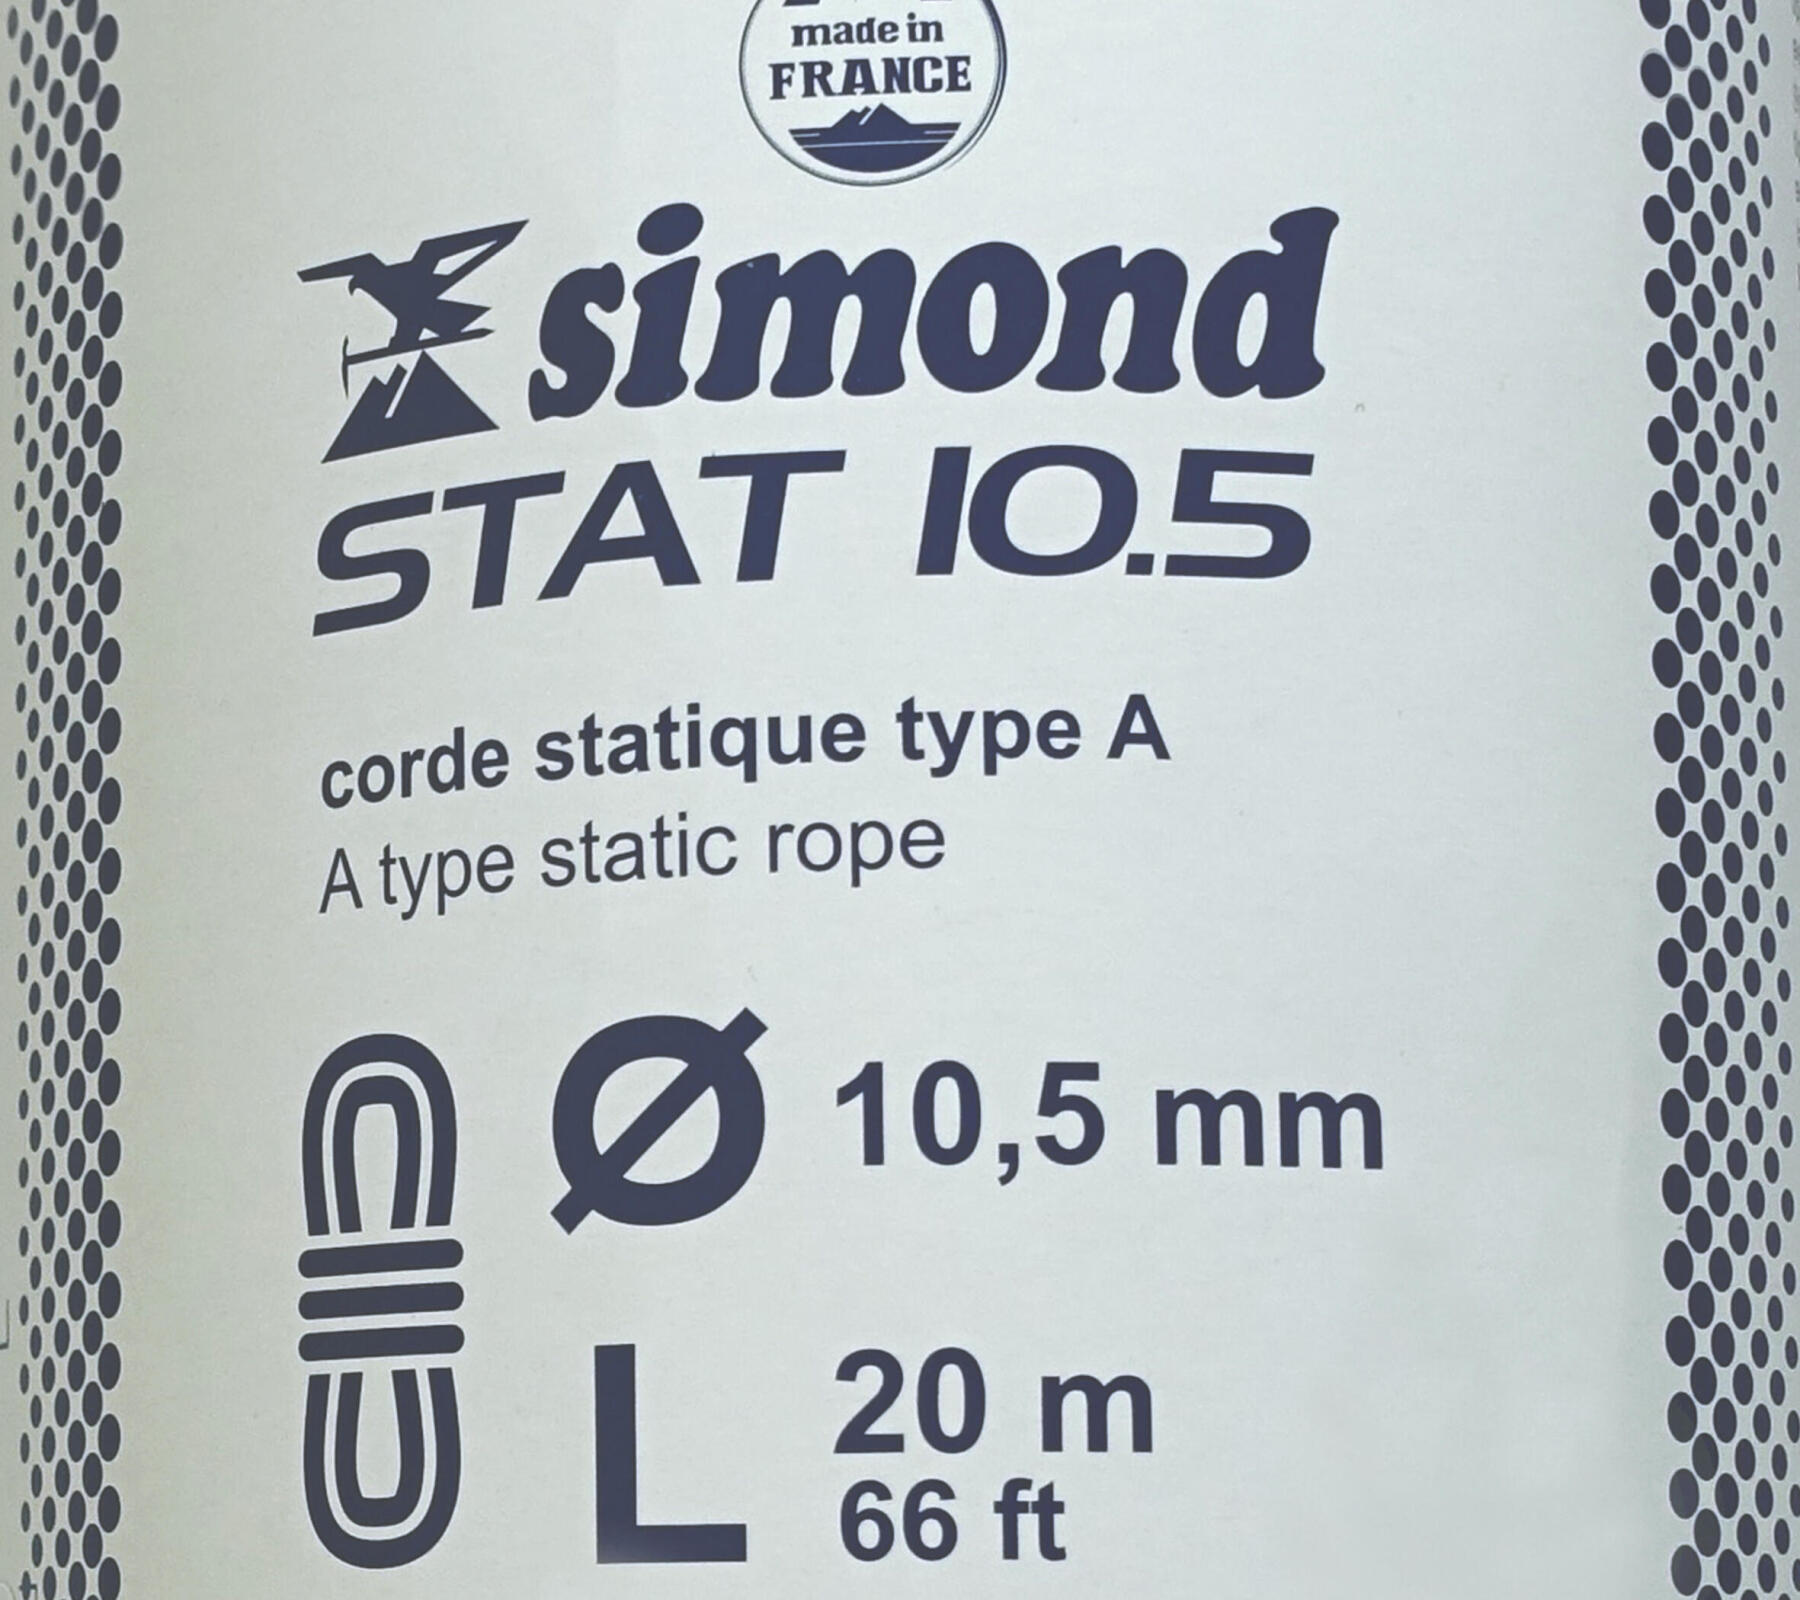 Spule statisches Seil 10,5 mm simond 2017